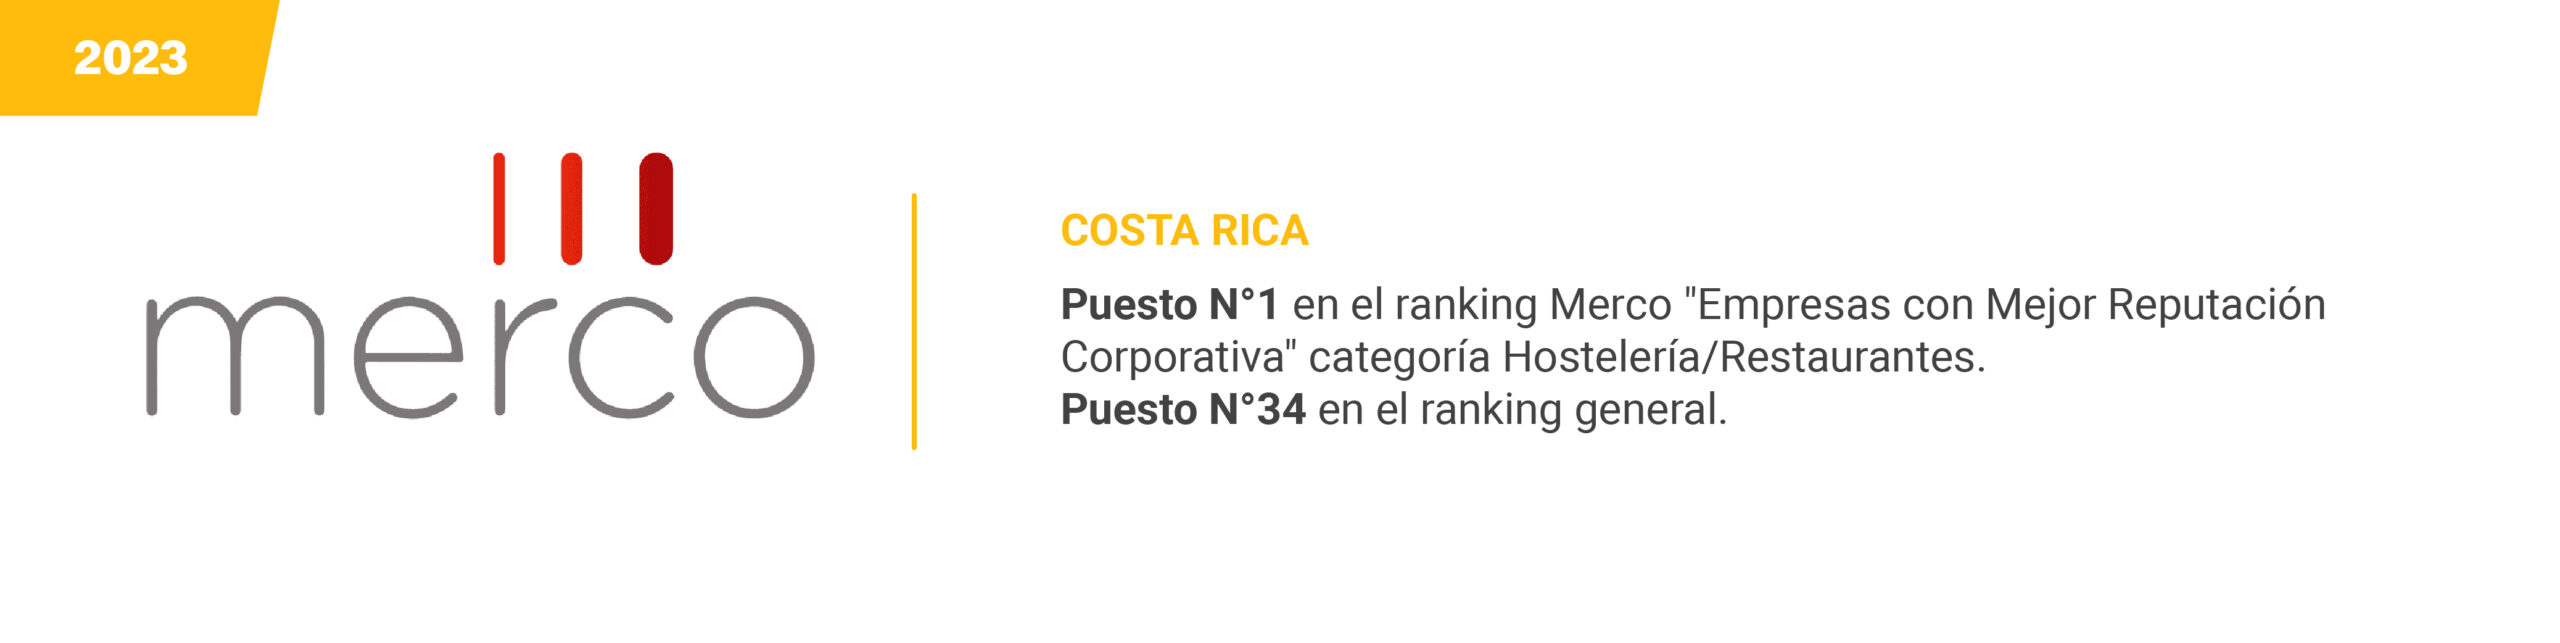 Merco - Costa Rica